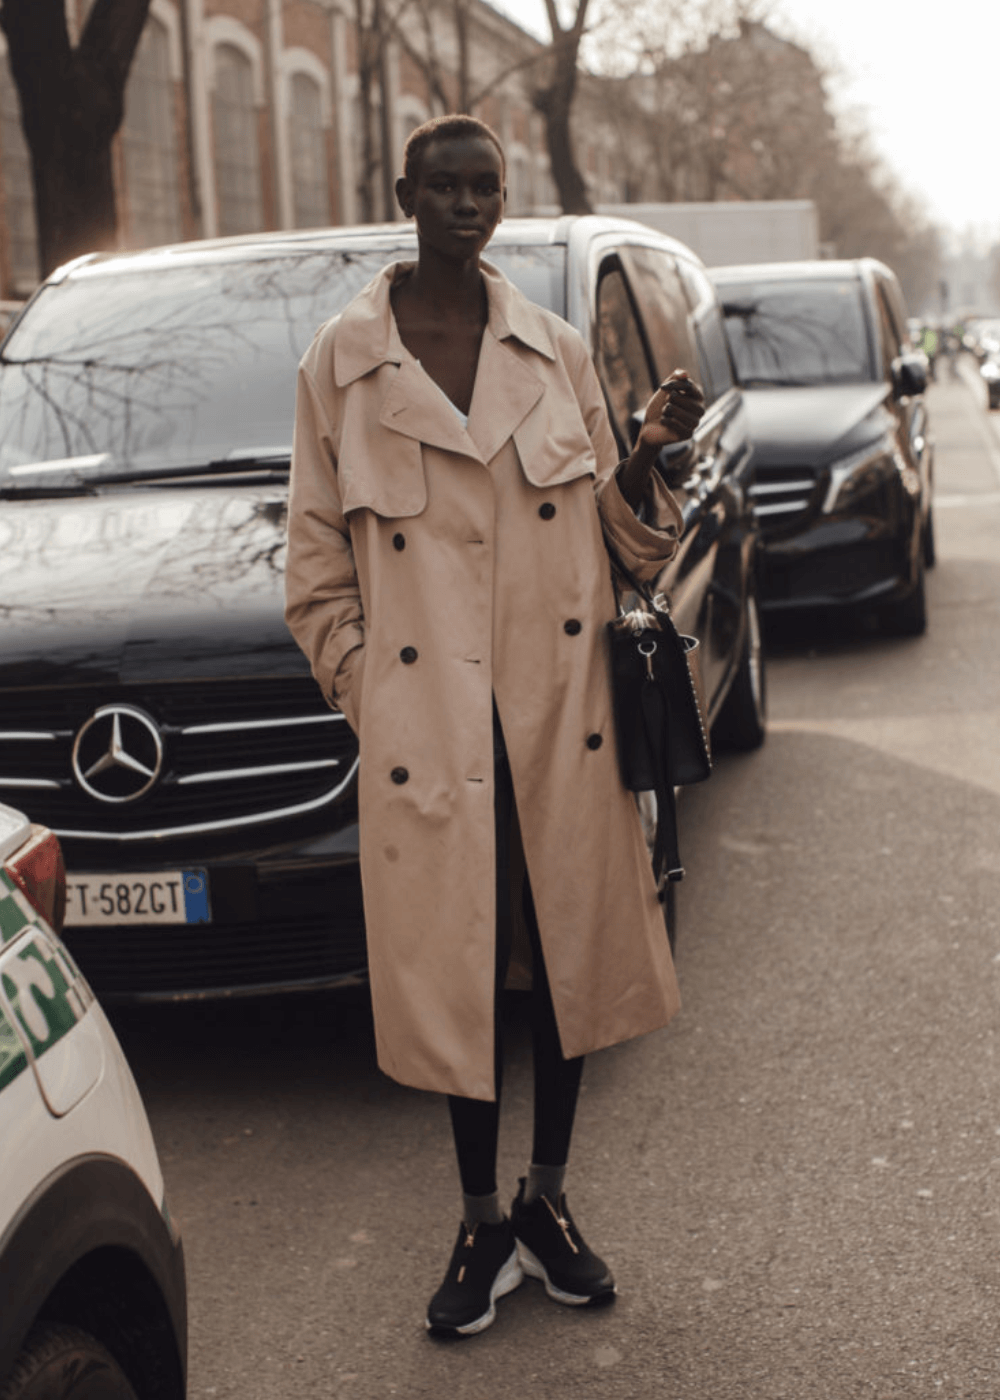 Street Style de Milão - trench coat bege, tênis e bolsa preta - street style de Milão - inverno - mulher negra em pé na rua - https://stealthelook.com.br